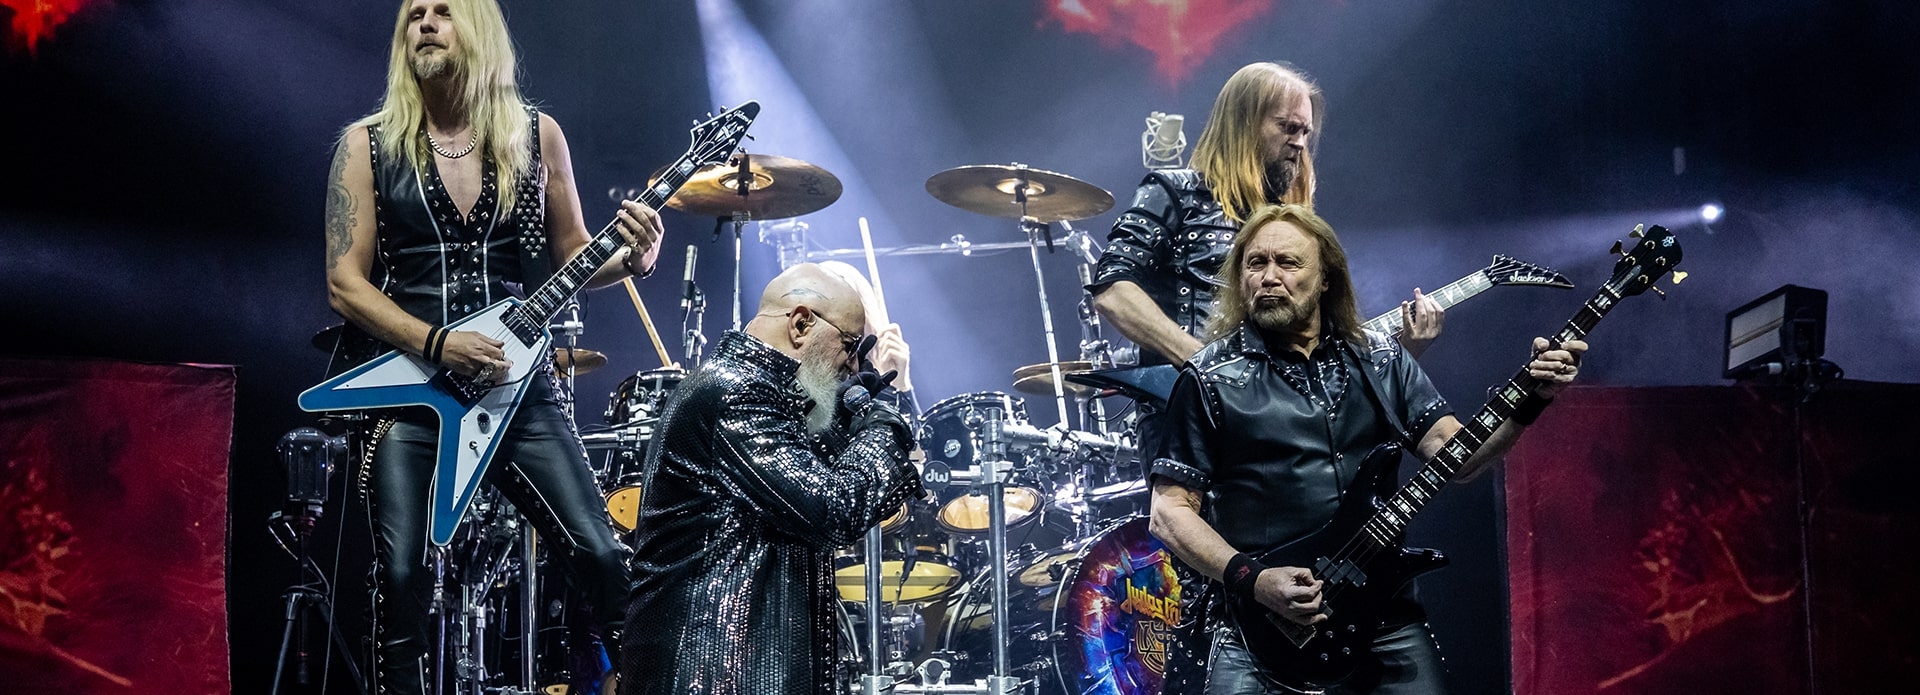 Judas Priest, Saxon i Uriah Heep - legendy heavy metalu zagrały w Krakowie